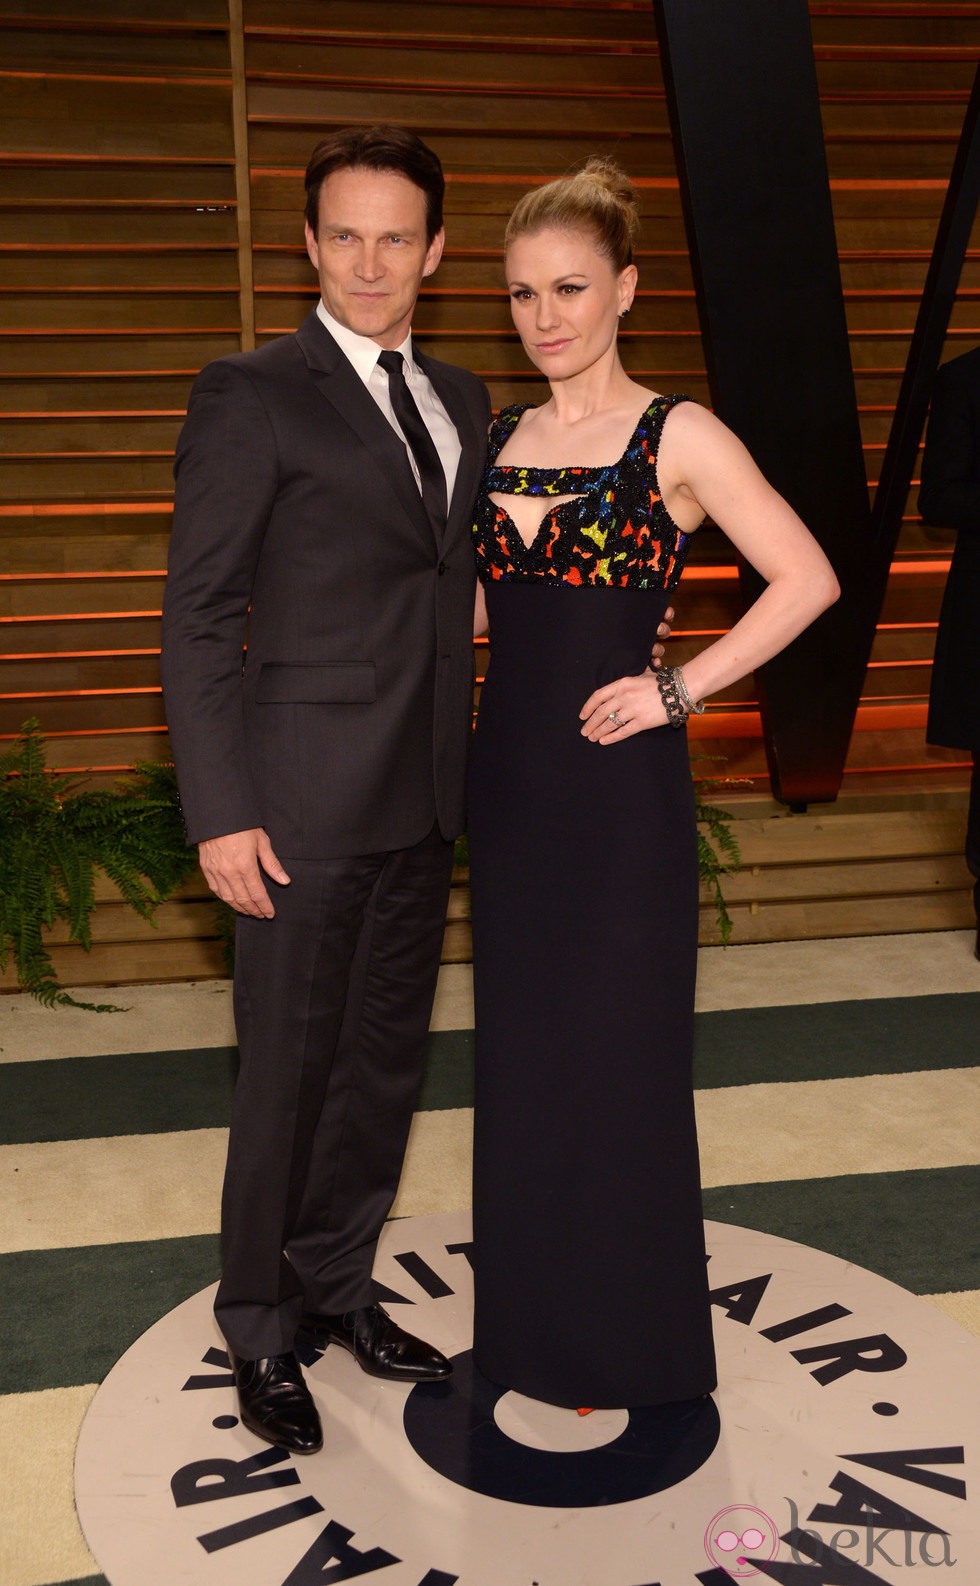 Stephen Moyer y Anna Paquin en la fiesta Vanity Fair en los Oscar 2014